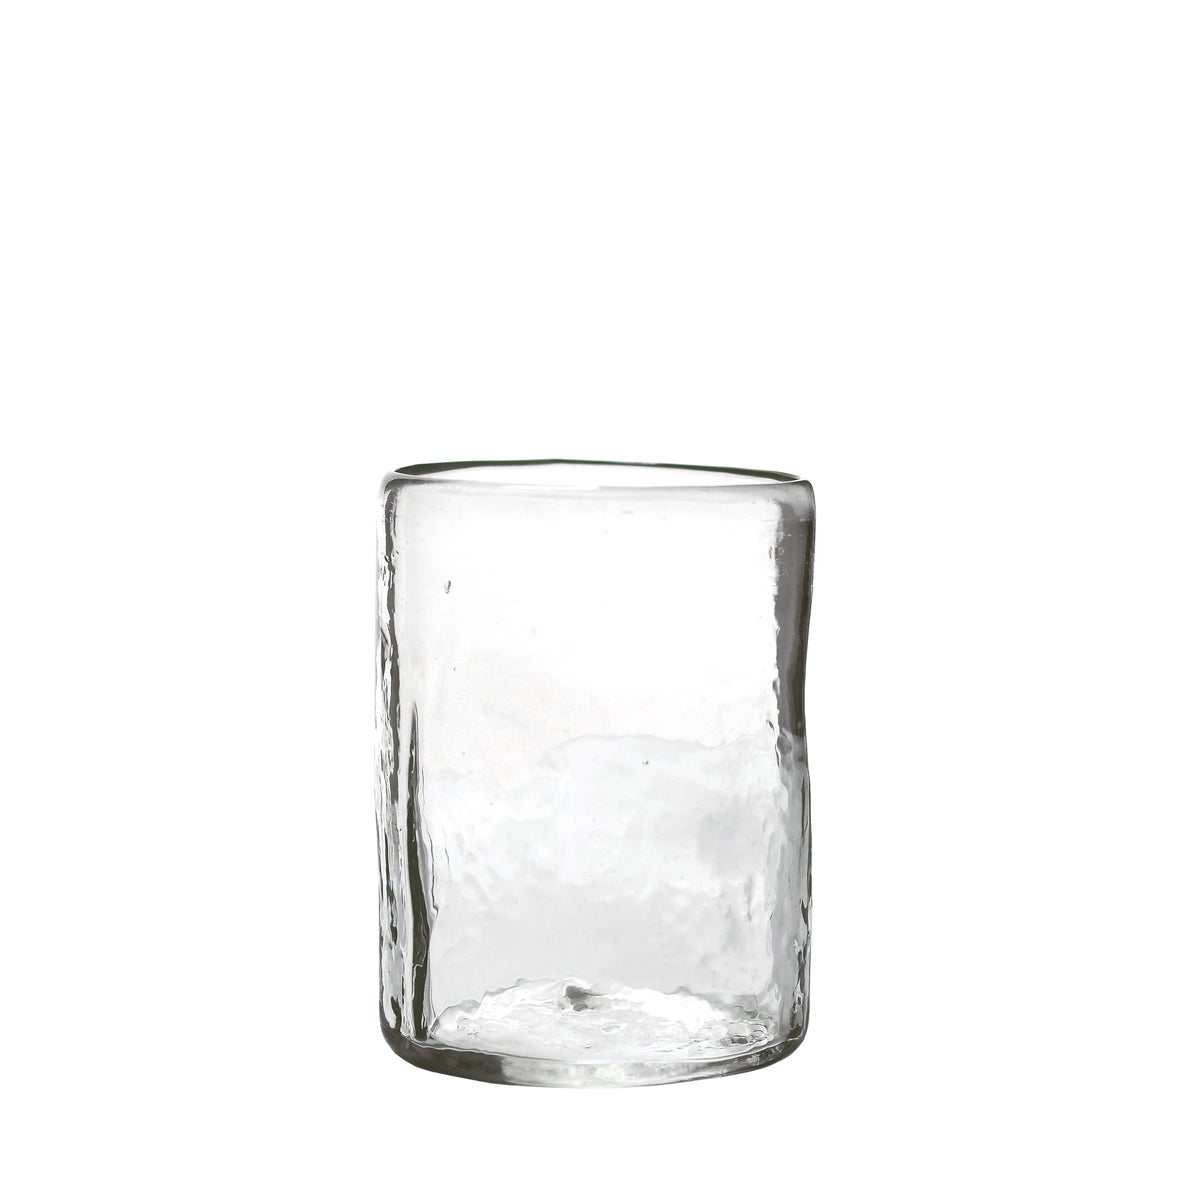 XAQUIXE GALERIA - MEDIUM GLASS